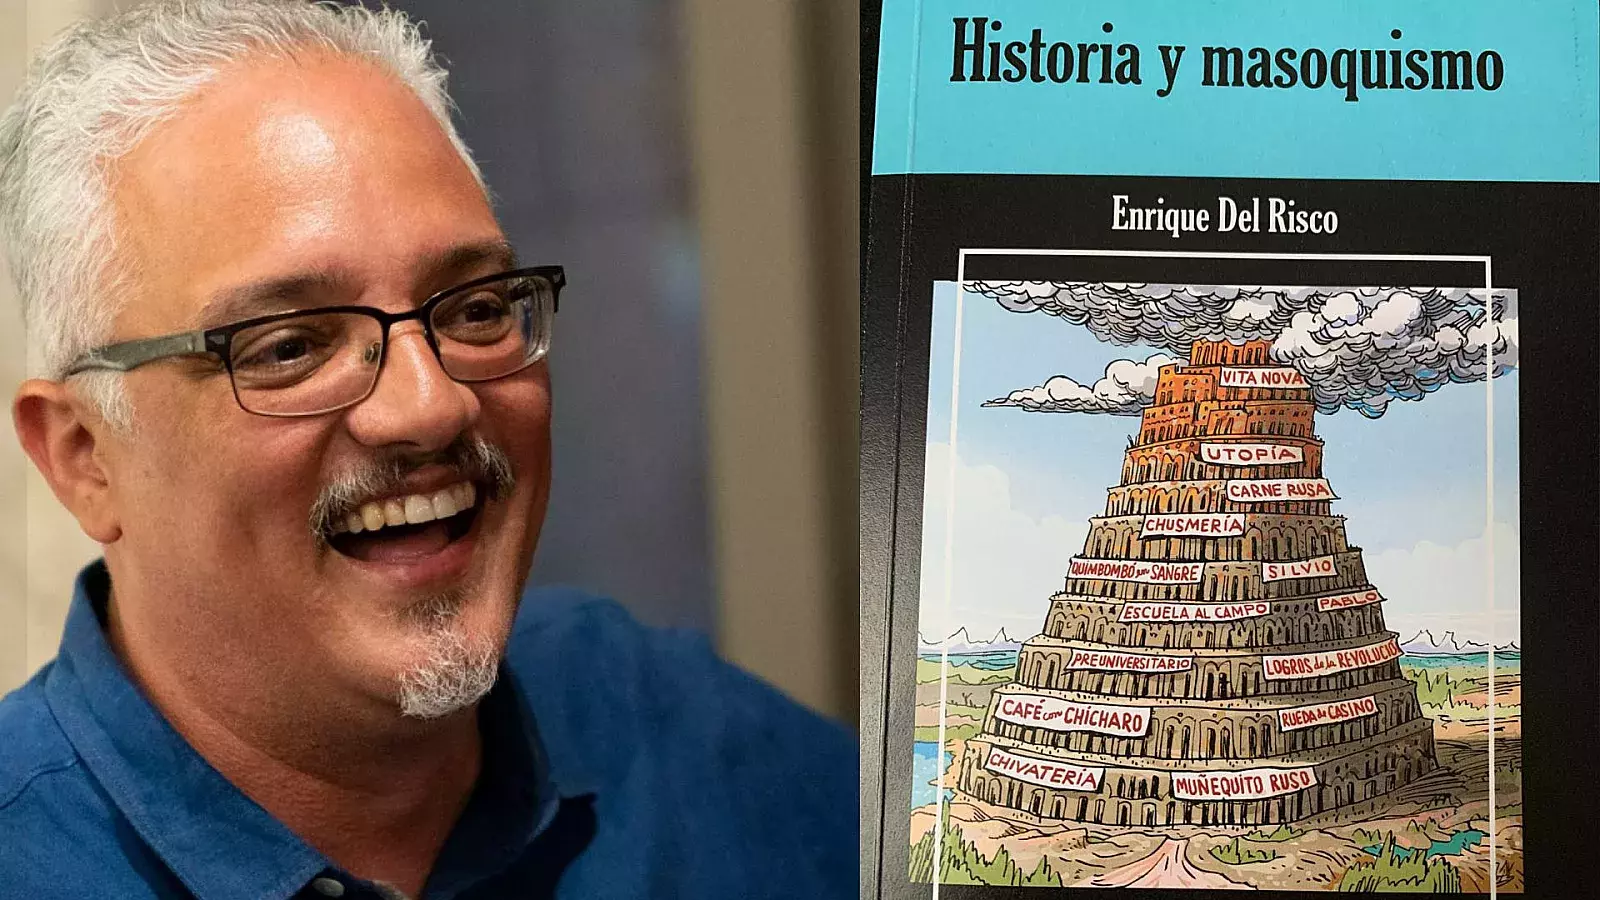 “Historia y masoquismo”, Enrique del Risco